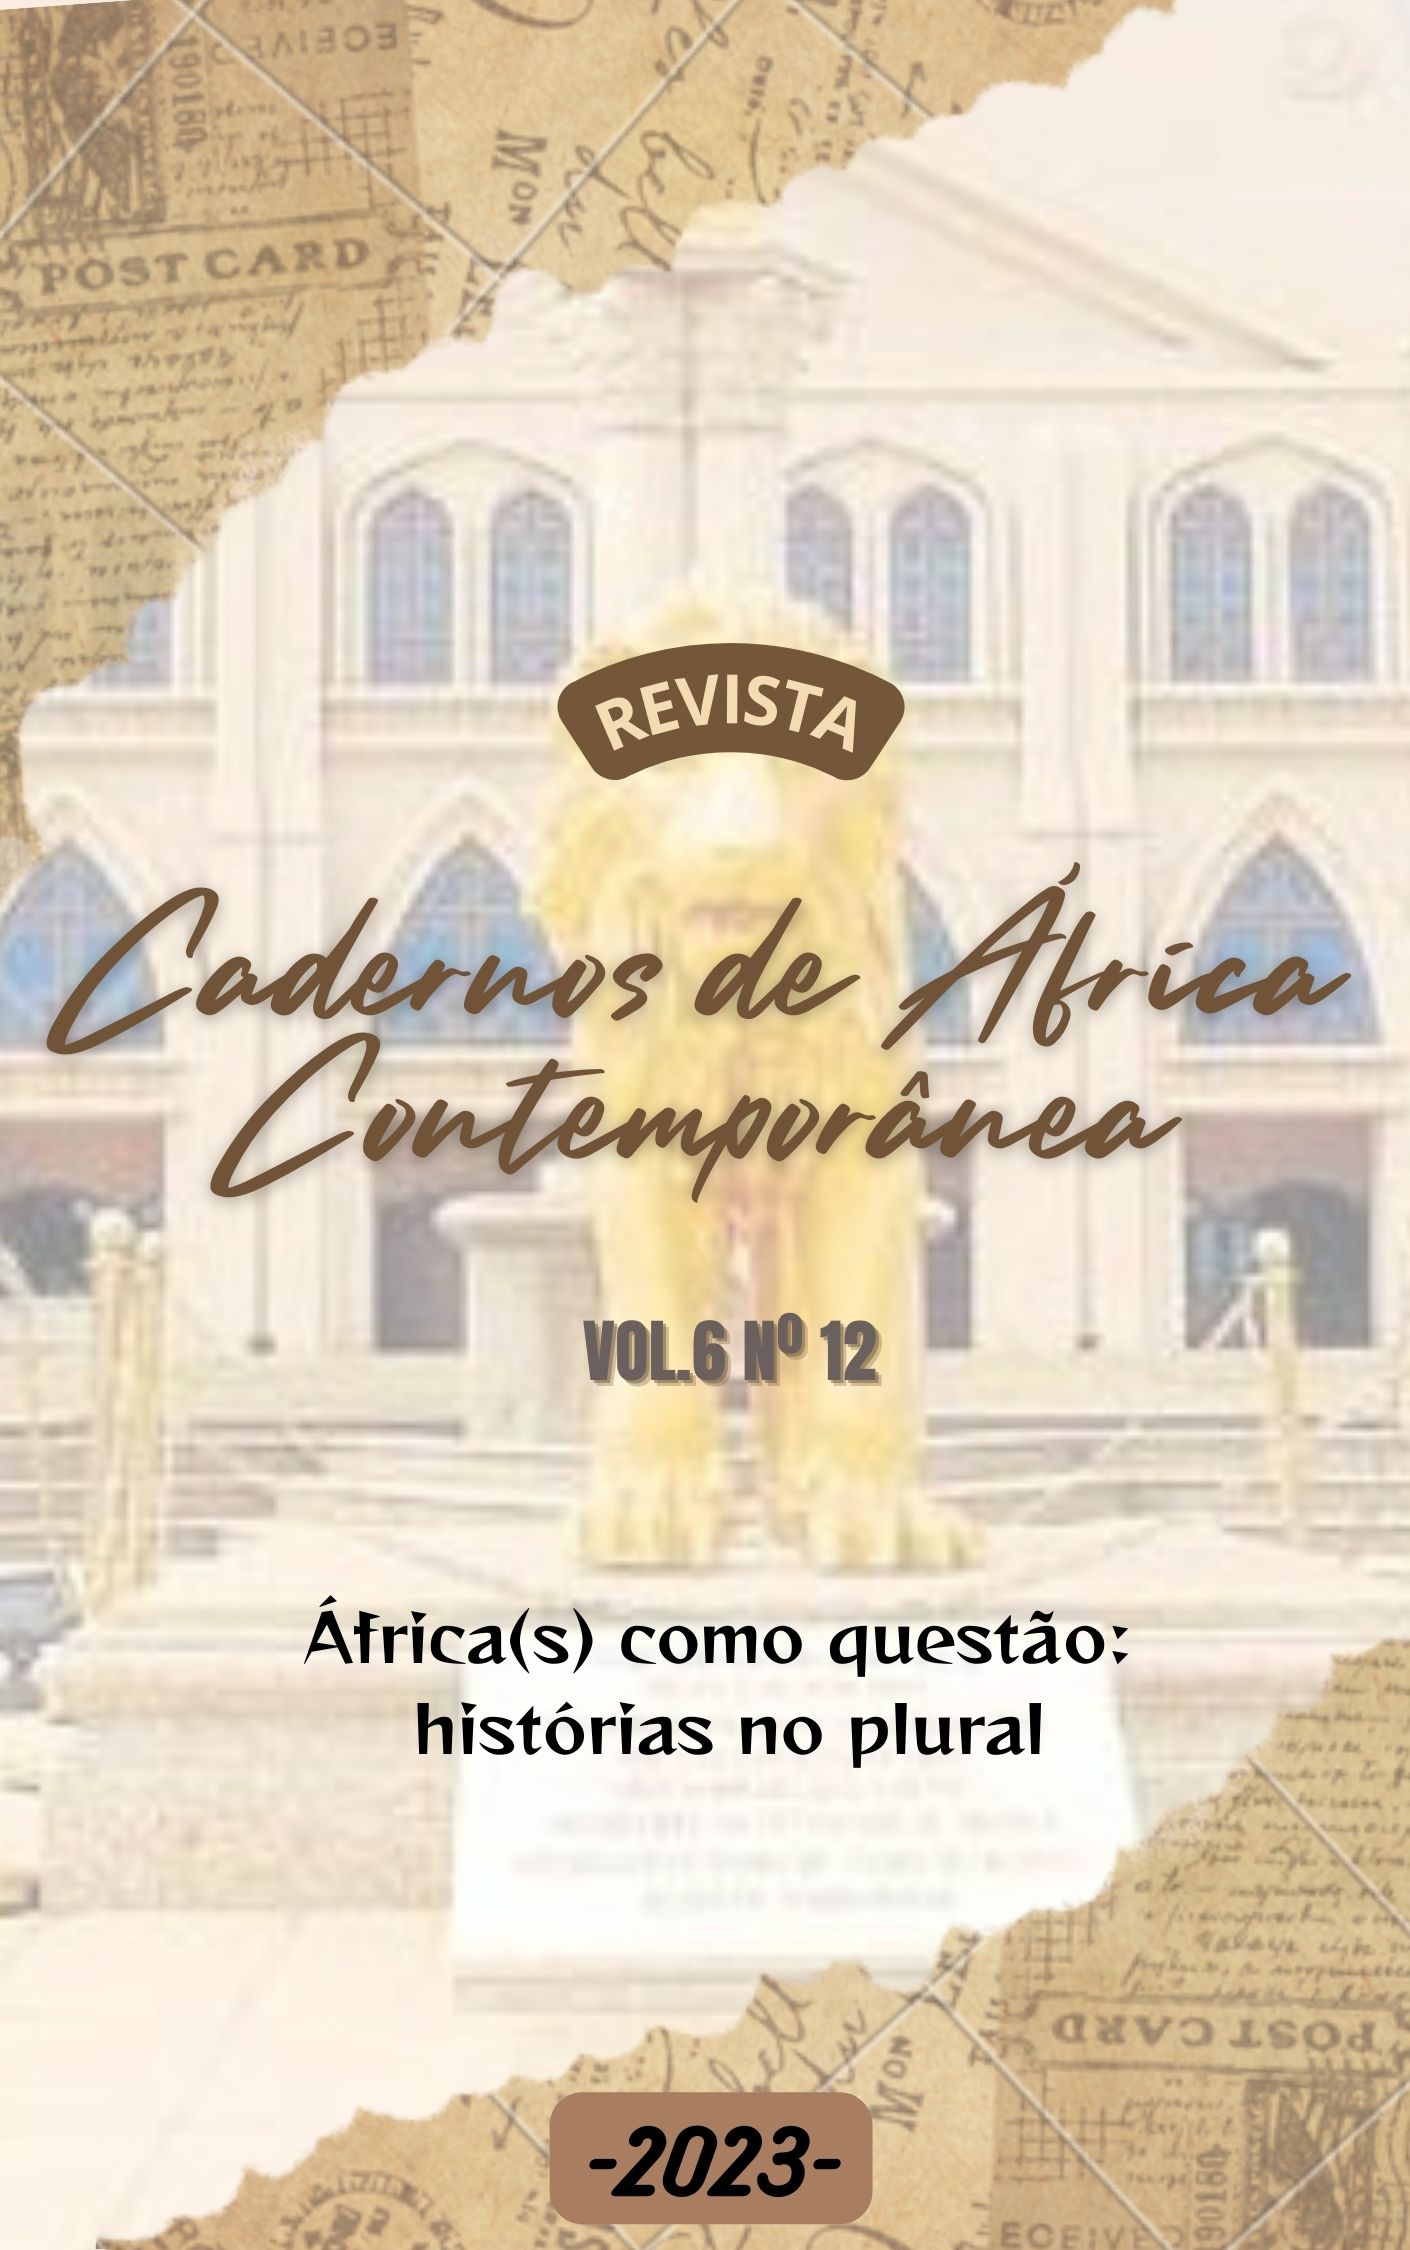 					View Vol. 6 No. 12 (2023): África(s) como questão: histórias no plural
				